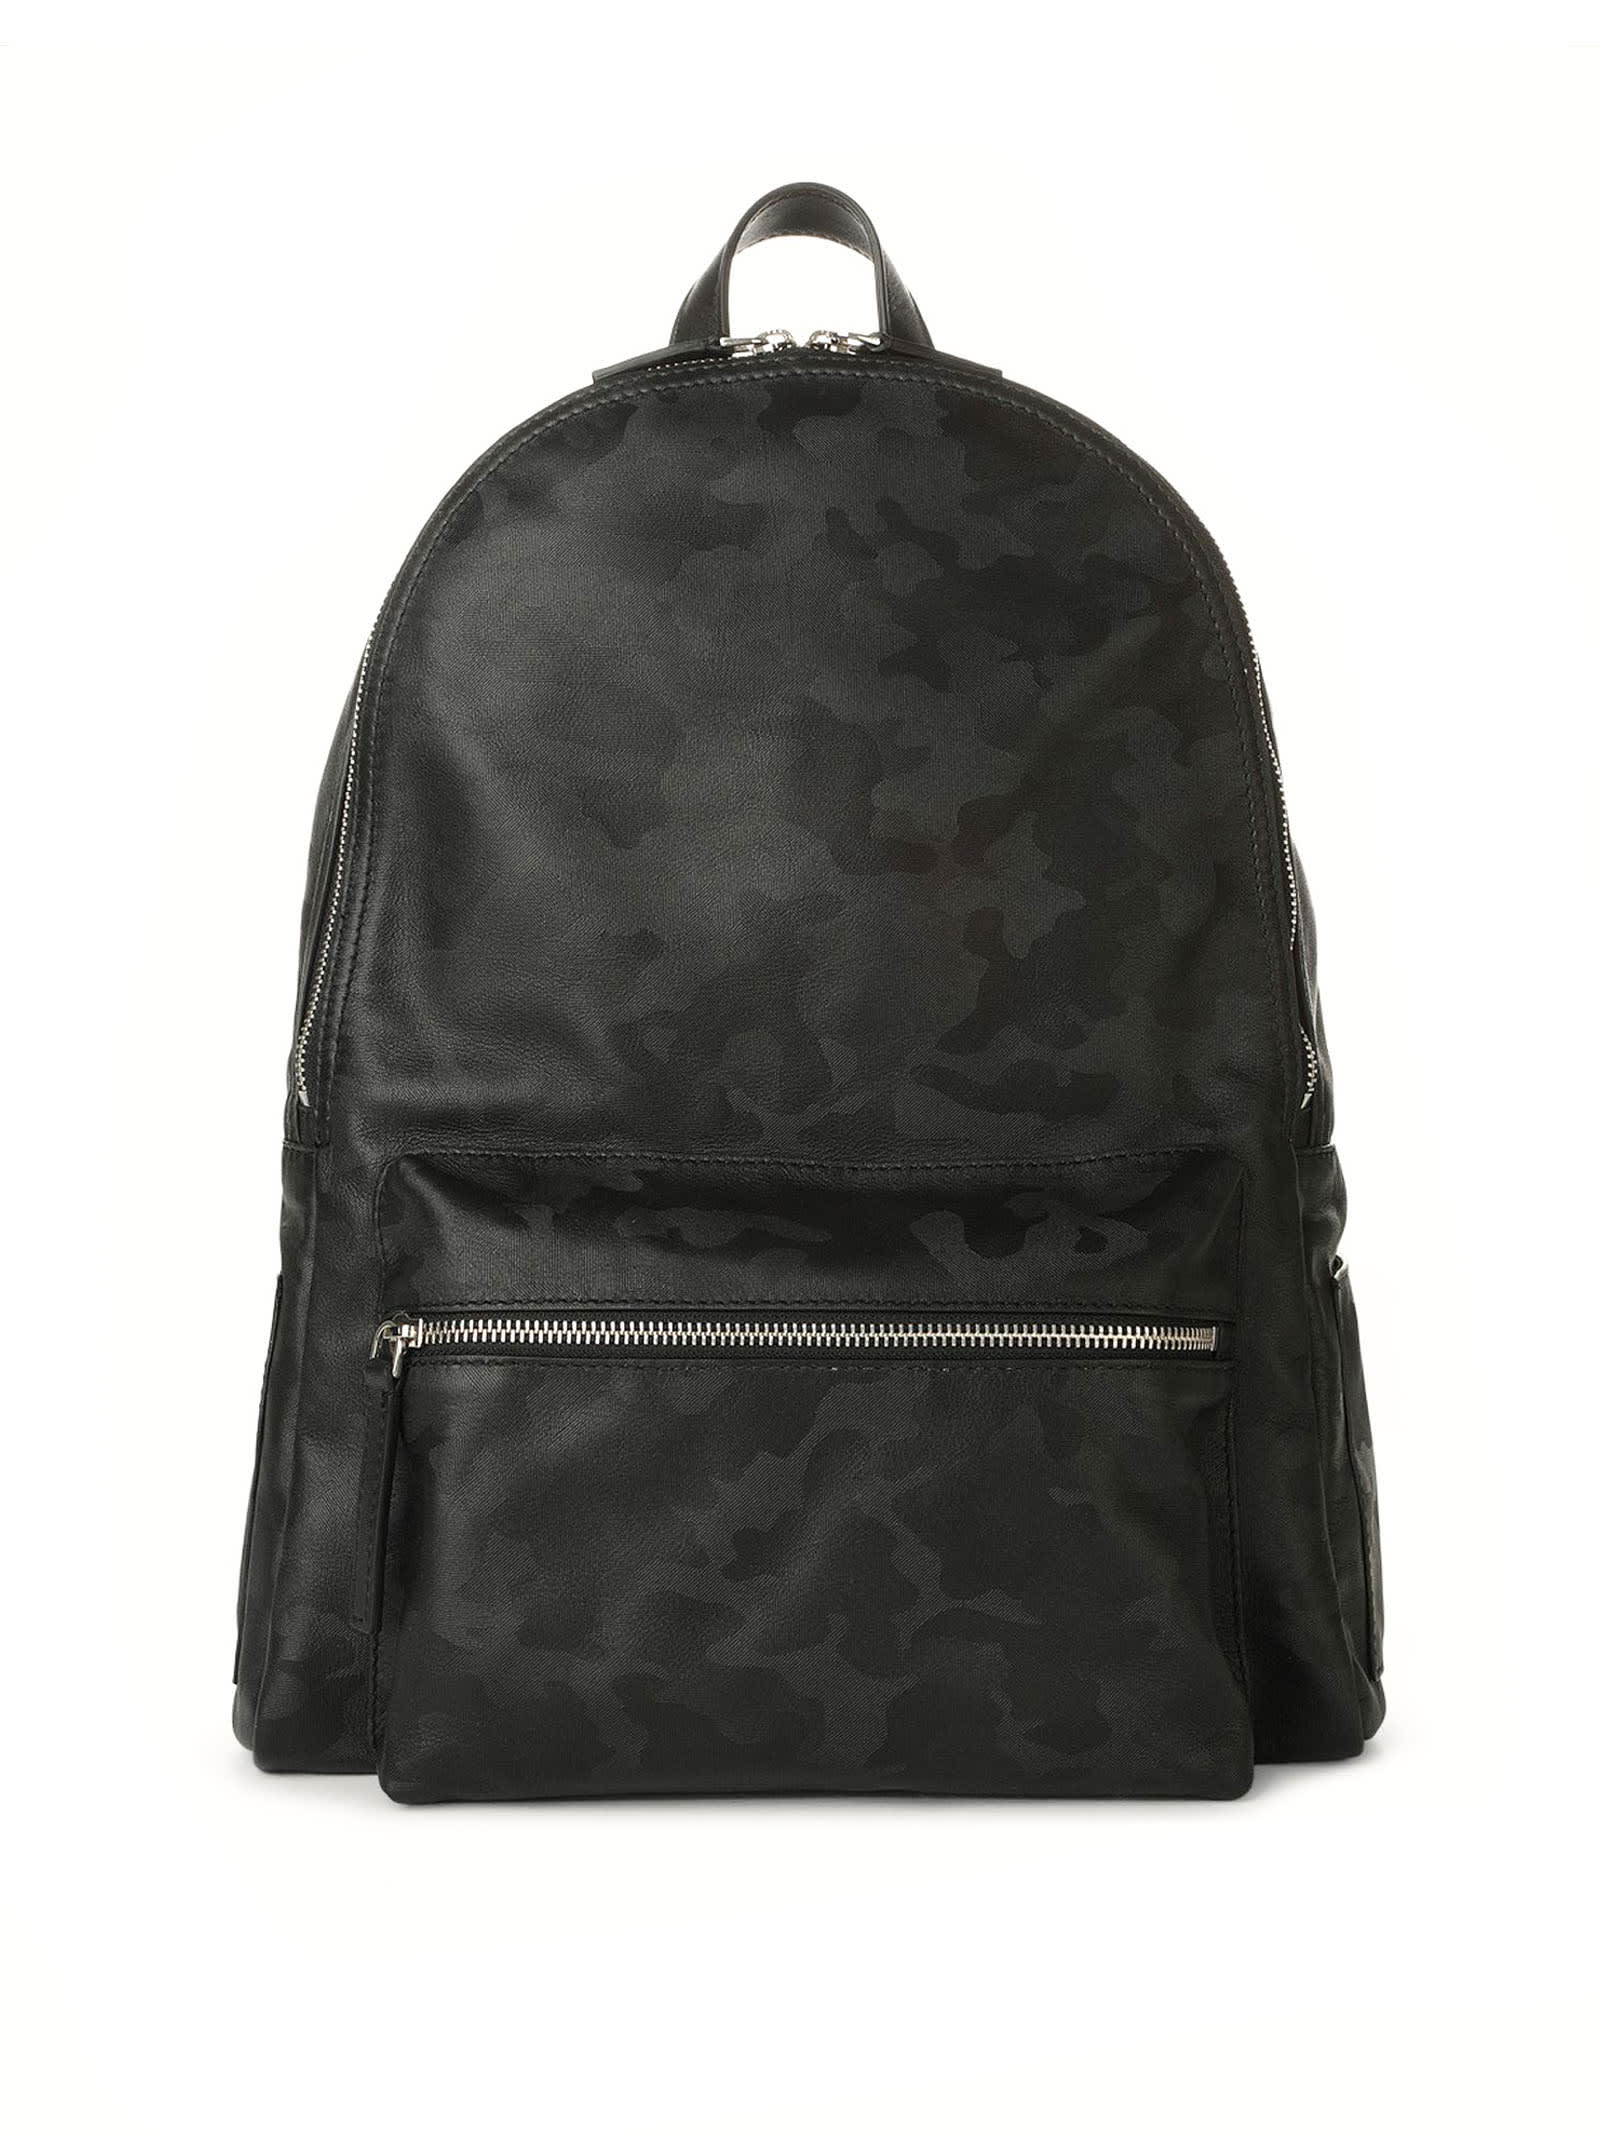 Skyline Black Leather Backpack